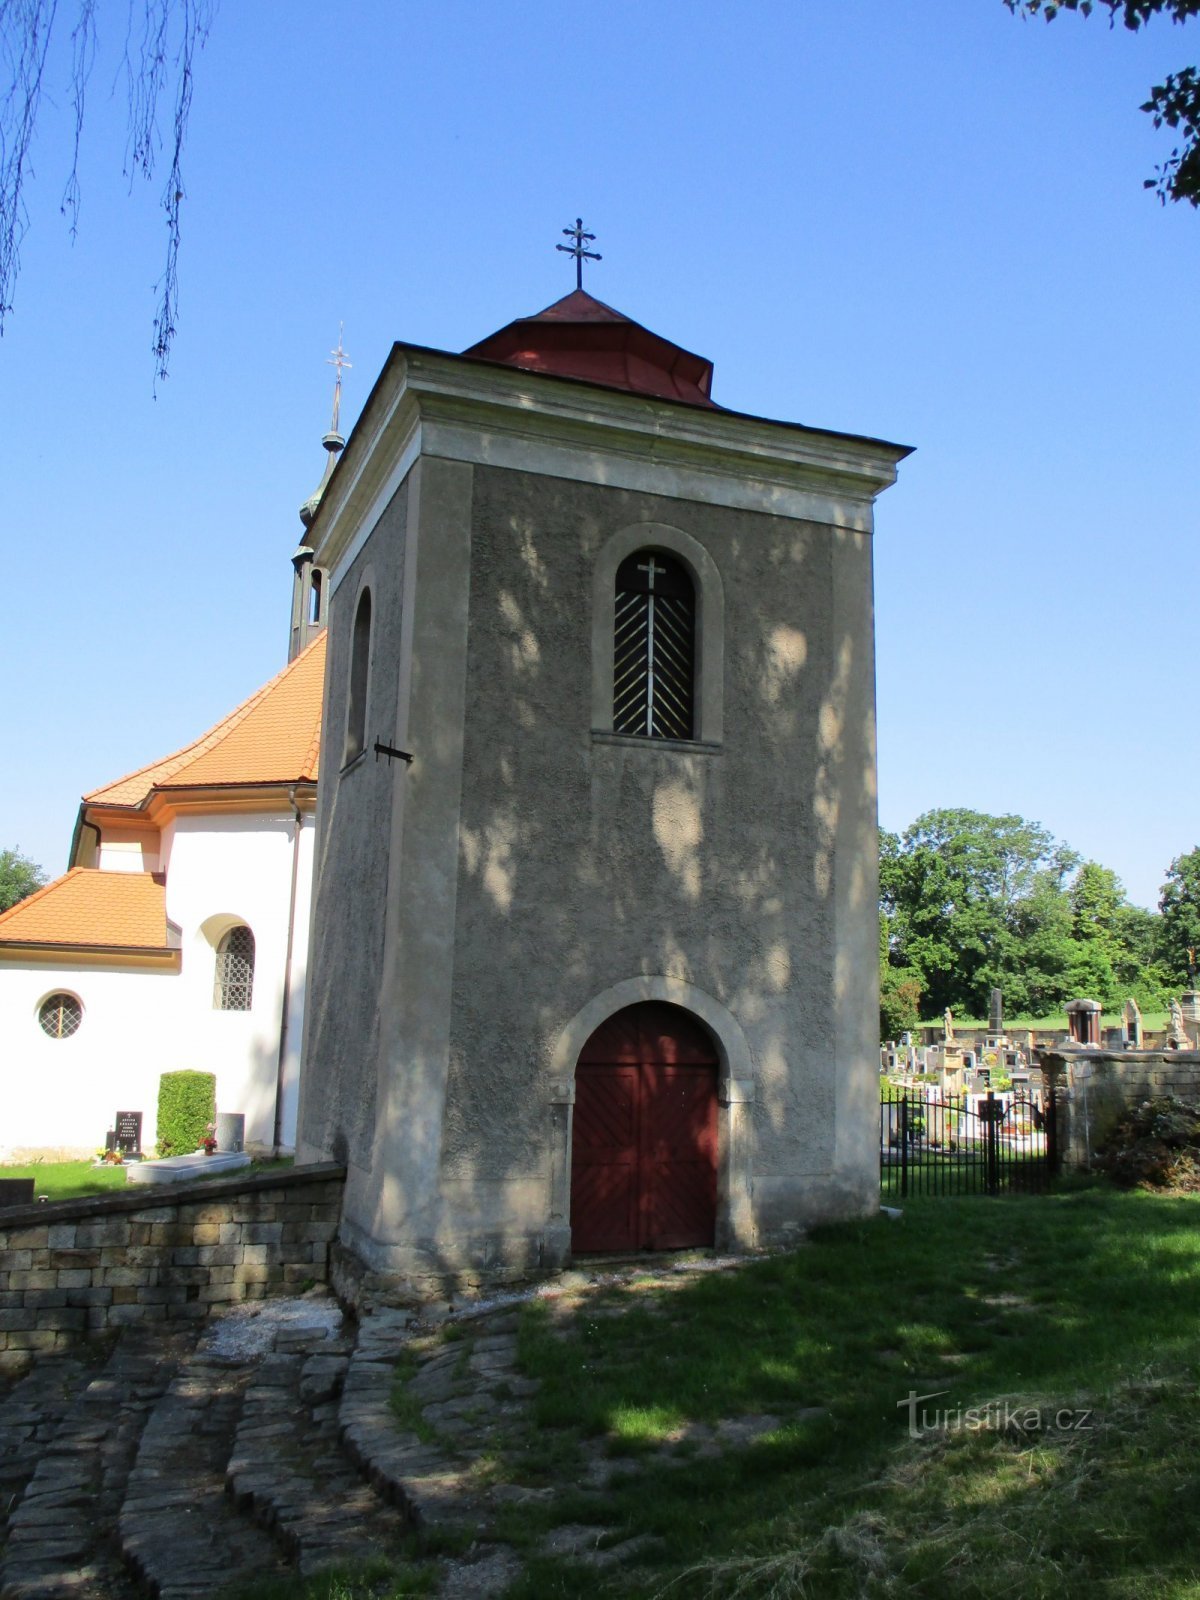 Tháp chuông ở nhà thờ St. Mary Magdalene (Jerice)